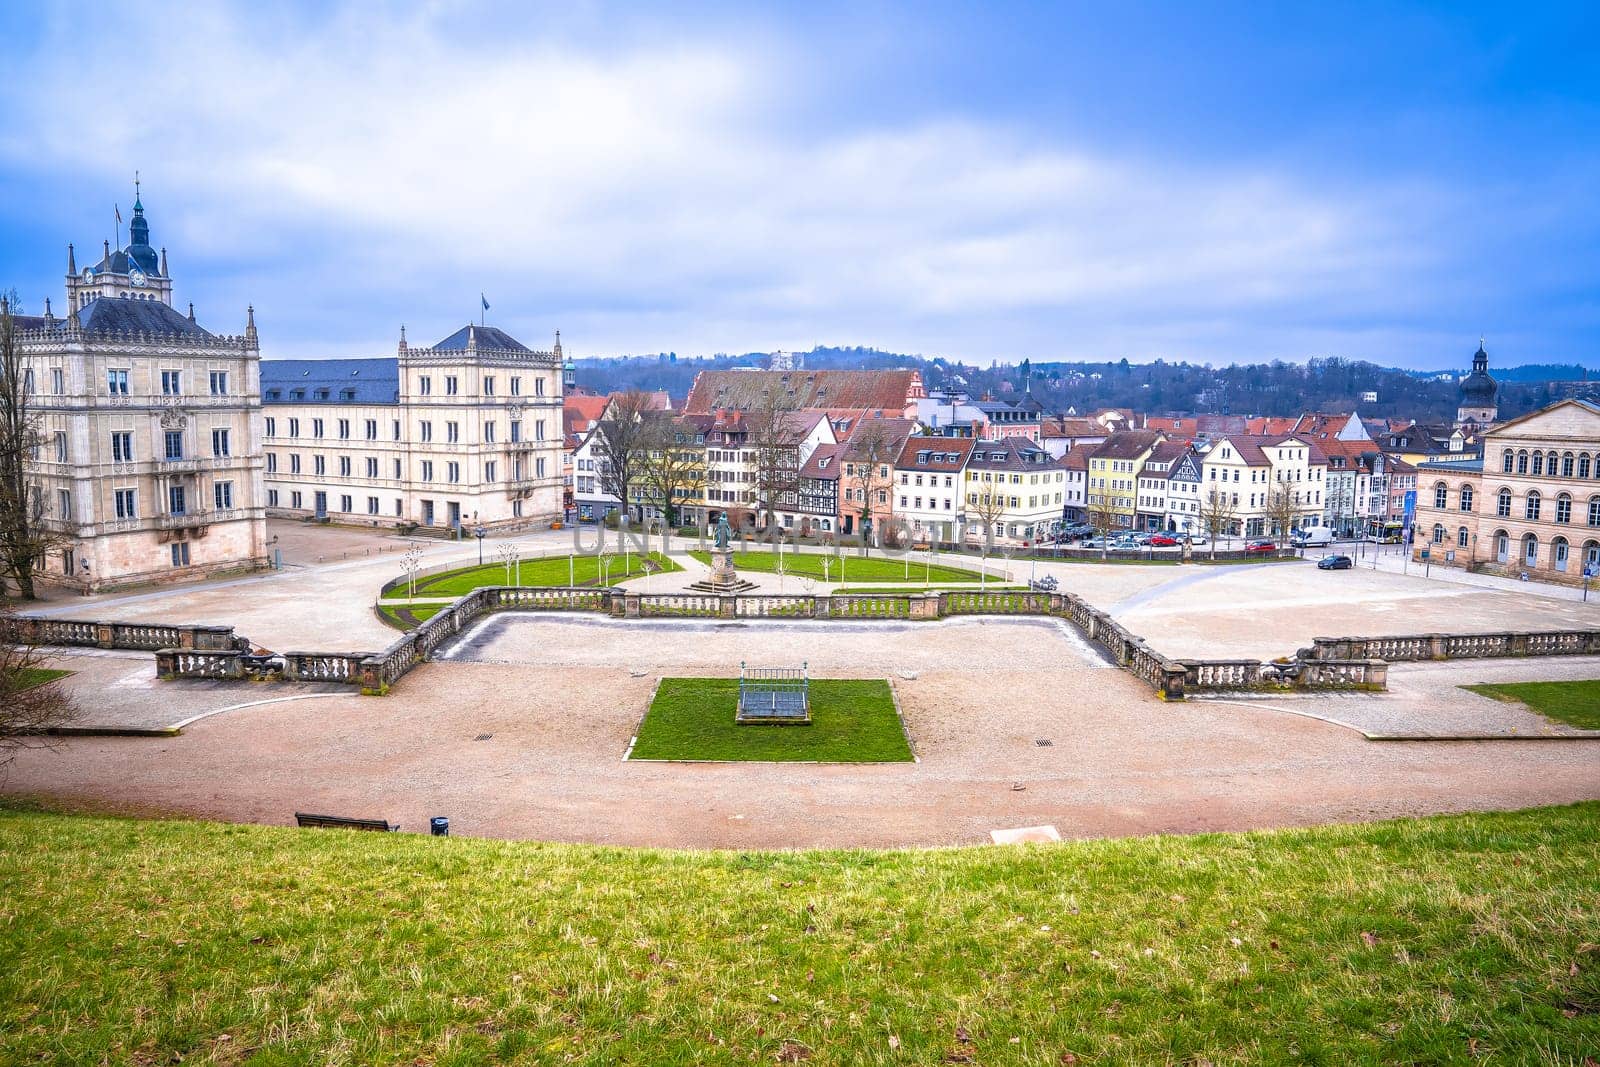 Historic Schlossplatz sqaure in Coburg architecture view by xbrchx